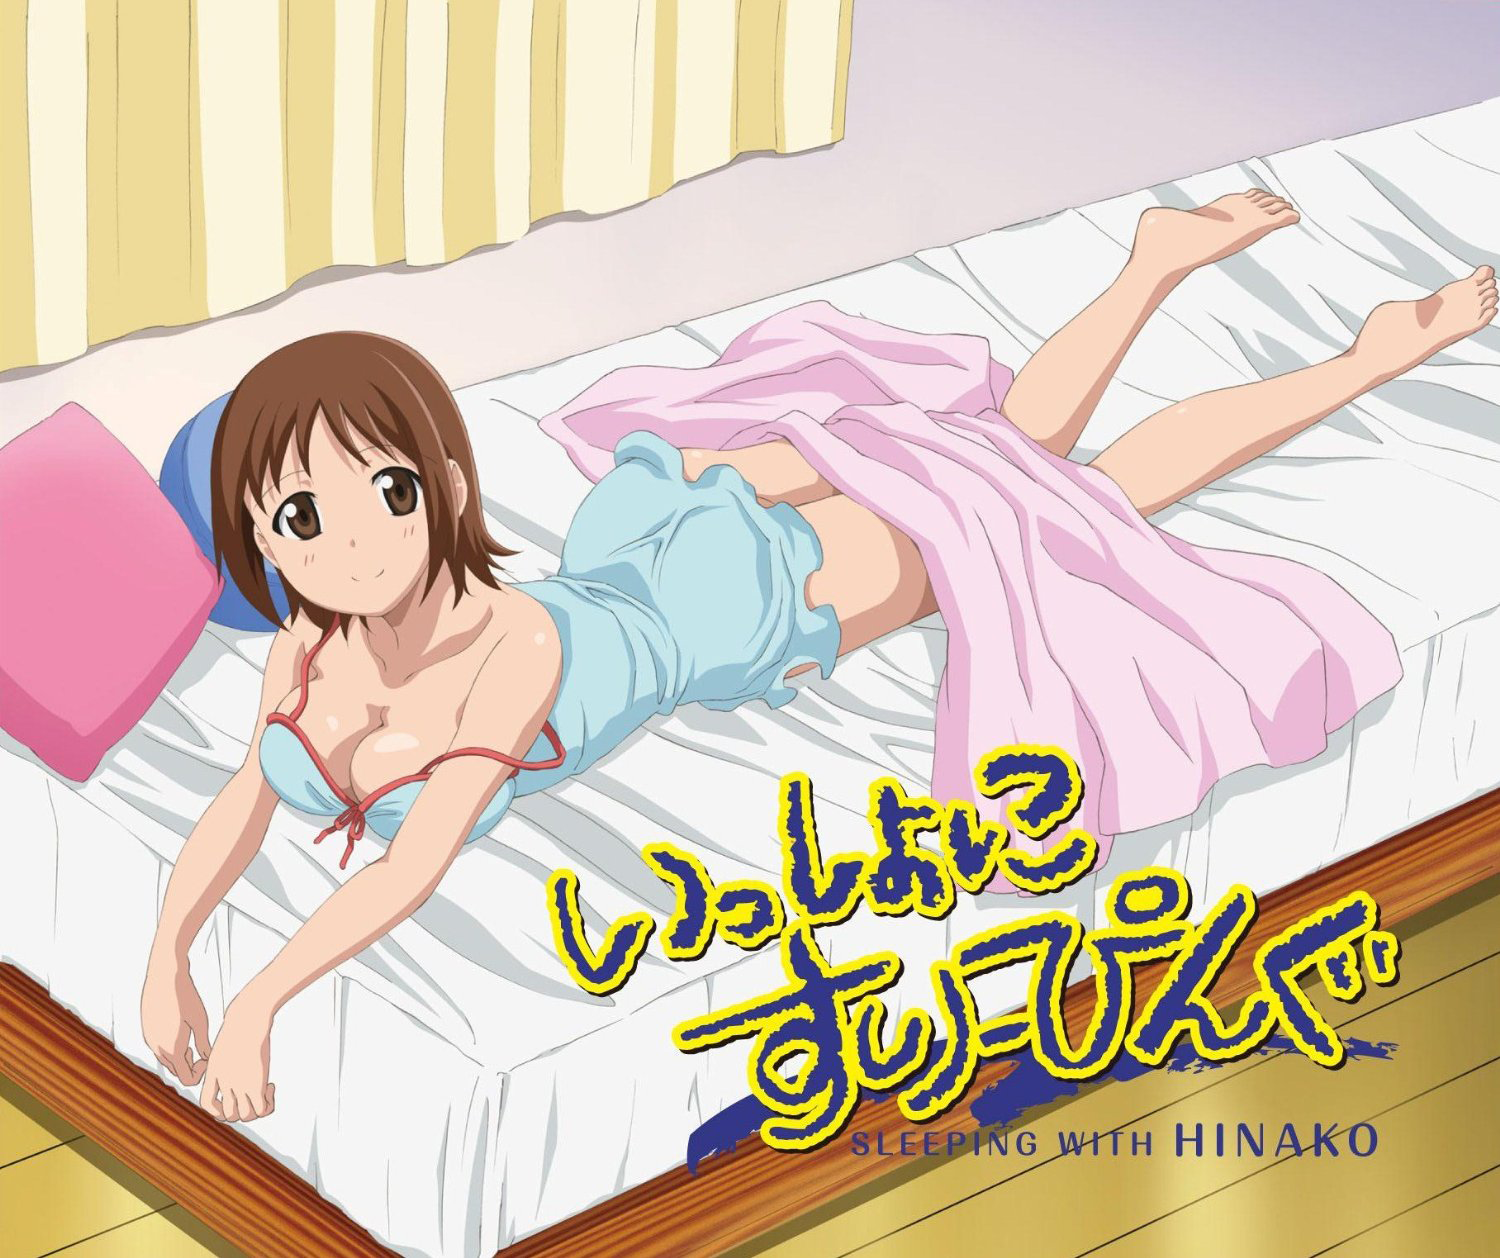 Issho ni Sleeping: Sleeping with Hinako - Blu-ray Reseed.